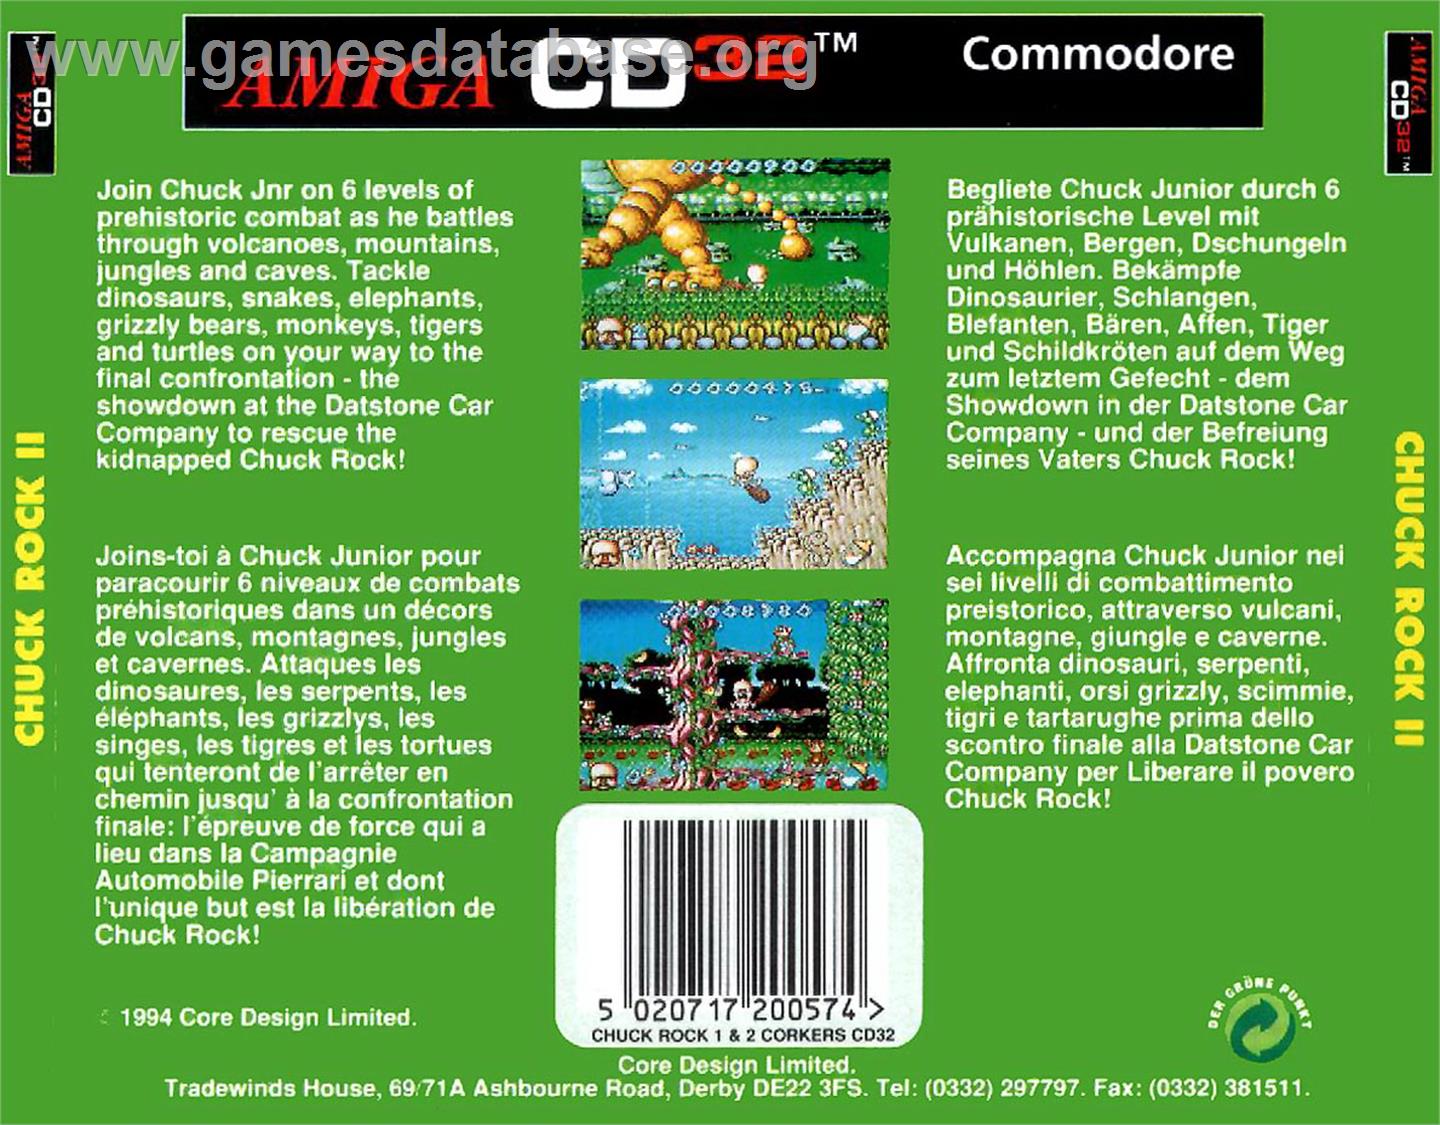 Chuck Rock 2: Son of Chuck - Commodore Amiga CD32 - Artwork - Box Back